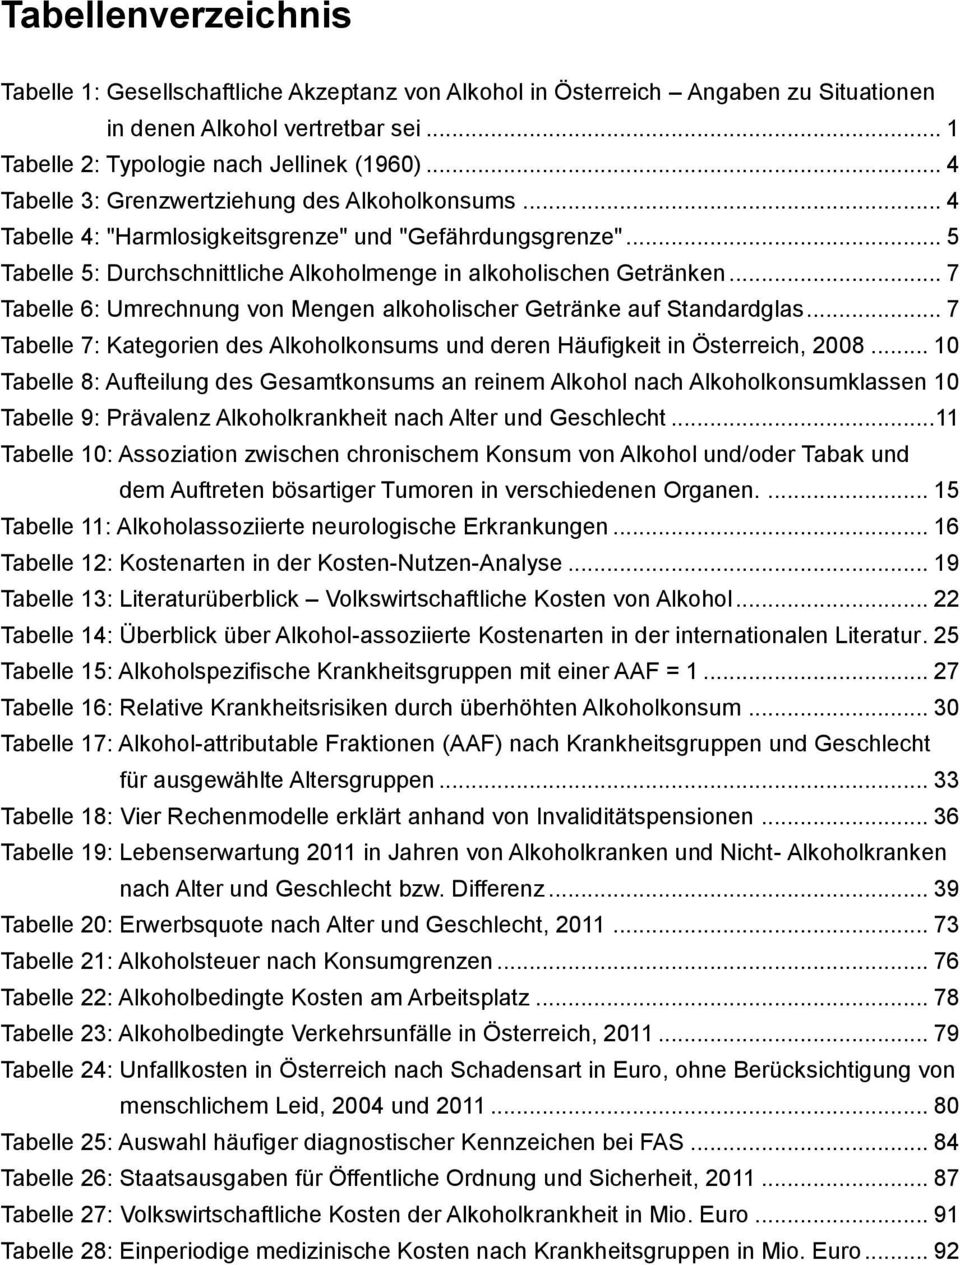 .. 7 Tabelle 6: Umrechnung von Mengen alkoholischer Getränke auf Standardglas... 7 Tabelle 7: Kategorien des Alkoholkonsums und deren Häufigkeit in Österreich, 2008.